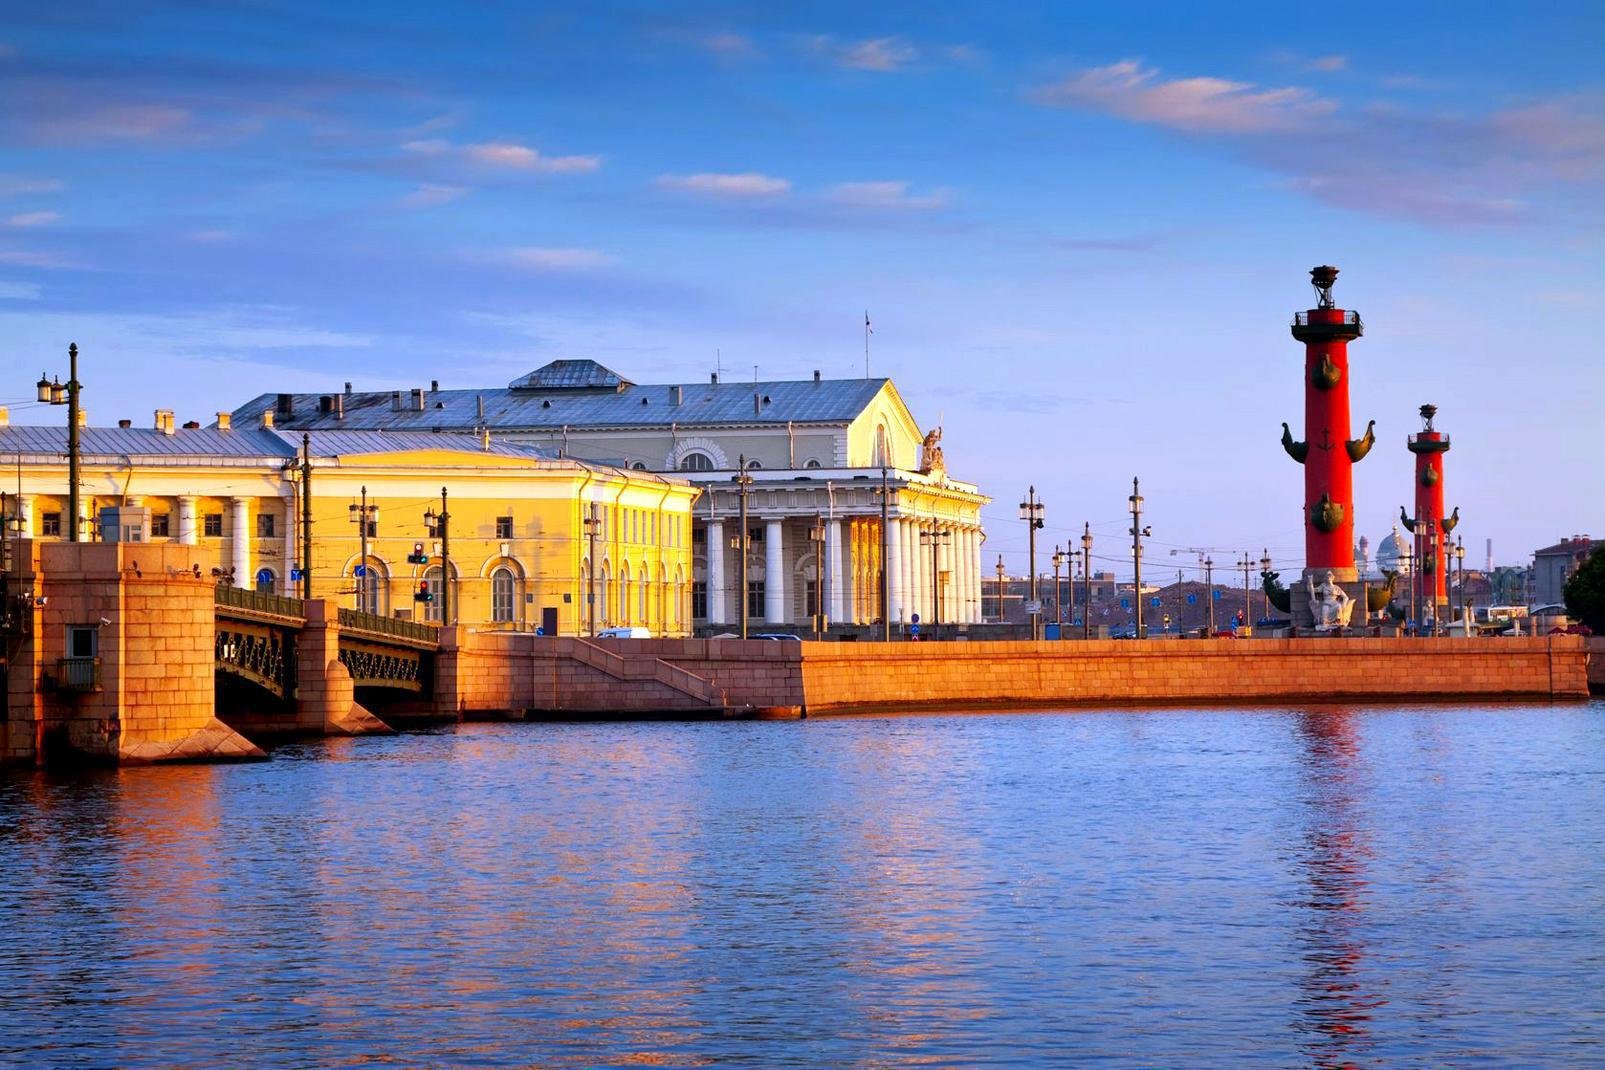 Saint-Pétersbourg est la capitale éternelle des tsars. L'ex-Léningrad émerveille le visiteur par son architecture exceptionnelle. Ville d'art bâtie sur les canaux de la Néva, la ville fondée par Pierre le Grand ravira les amateurs d'art. Bien sûr, la visite de l'Ermitage, l'un des plus prestigieux musées du monde, est incontournable. Si vous êtes découragé par la foule, reportez-vous sur les musées ...